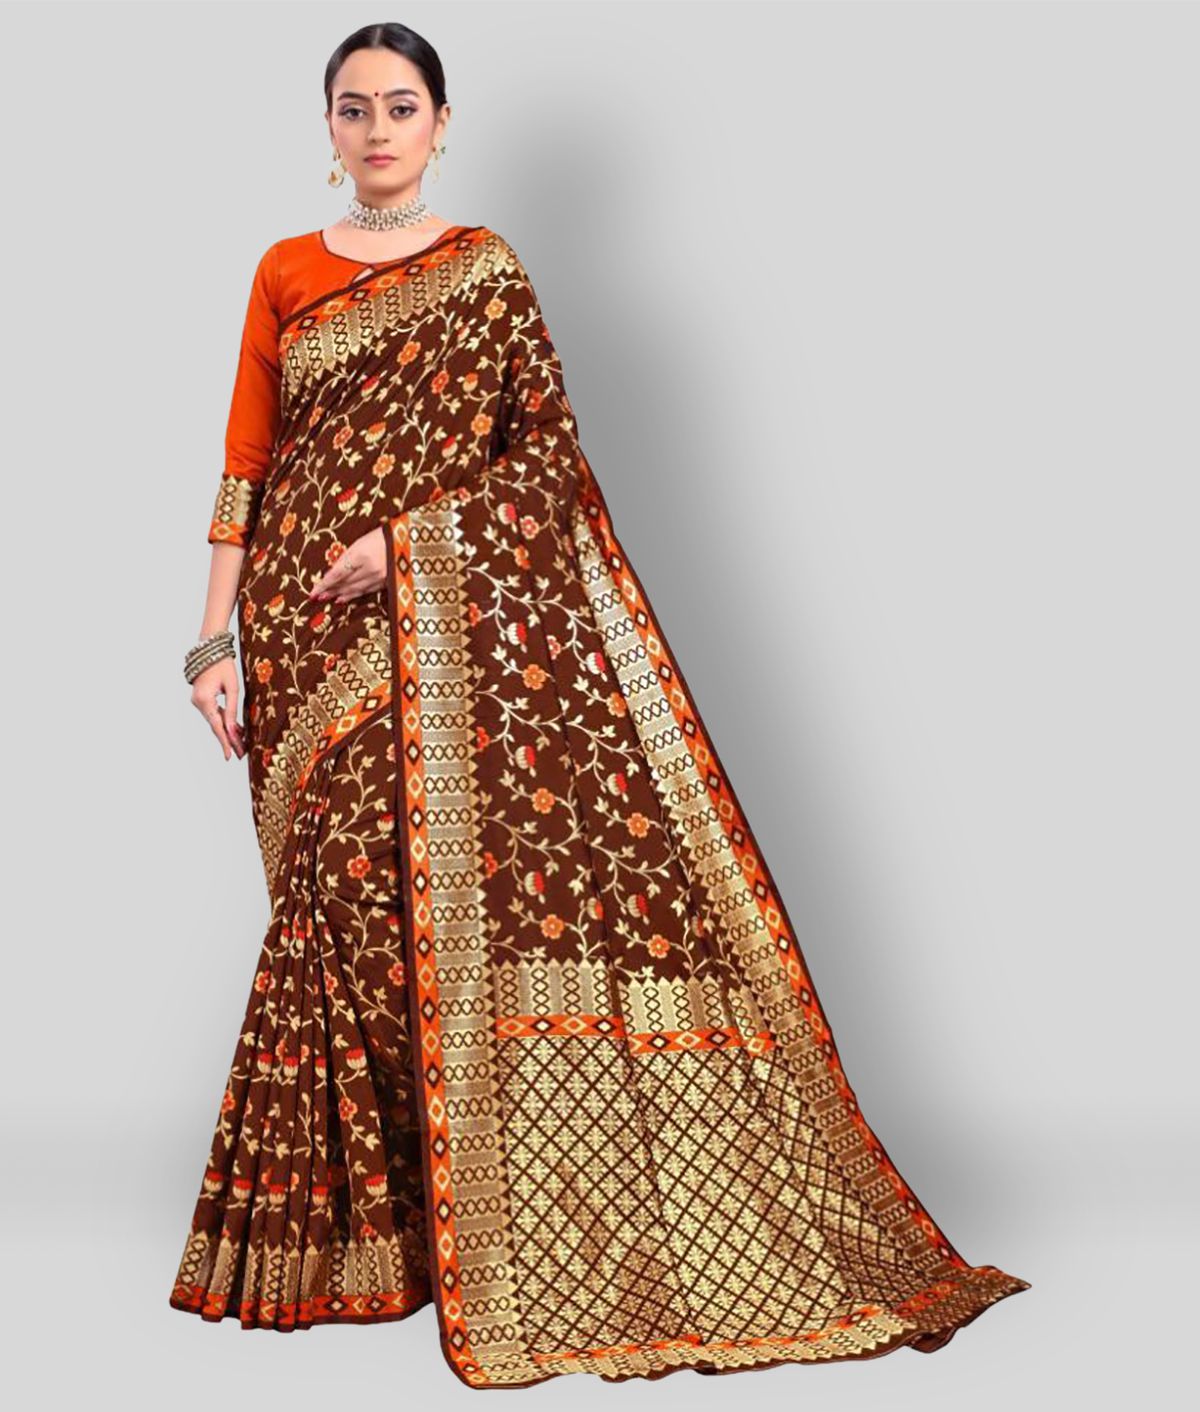     			Sherine - Brown Banarasi Silk Saree With Blouse Piece (Pack of 1)